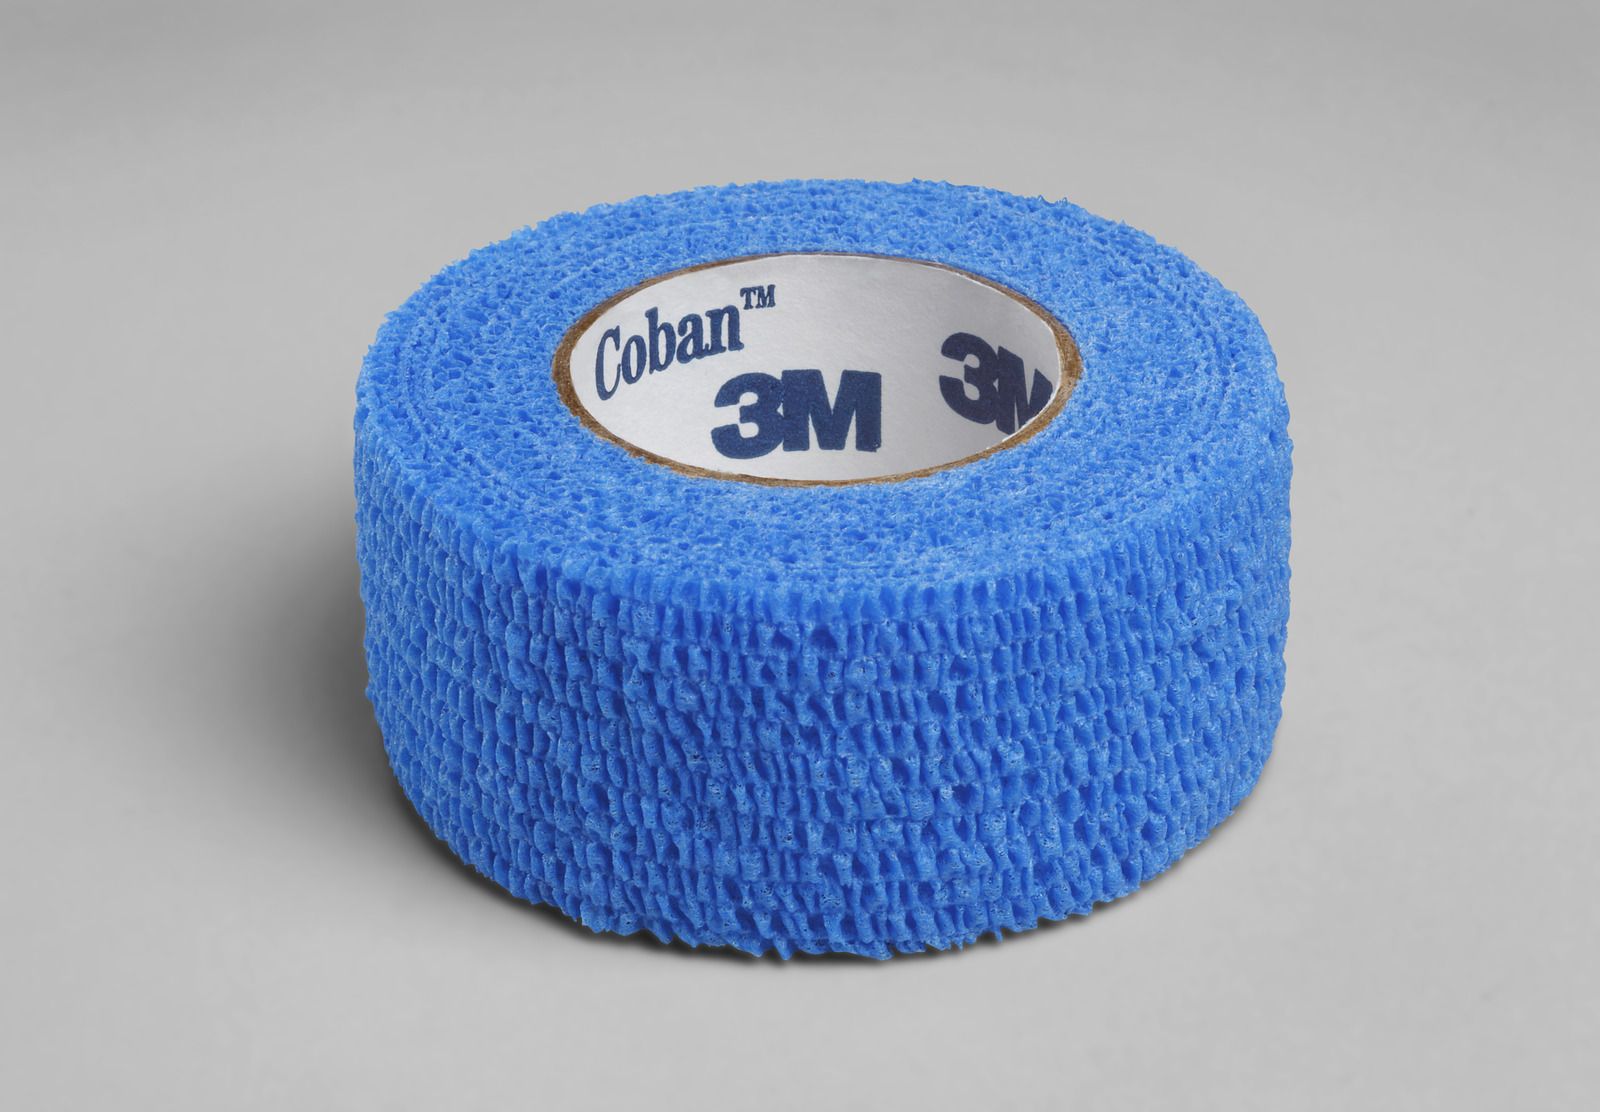 3M™ Coban™ Selbsthaftender Stütz- und Fixierverband, 1581B, blau, 2.5cm x 4.5m (gedehnt), 30/Packung